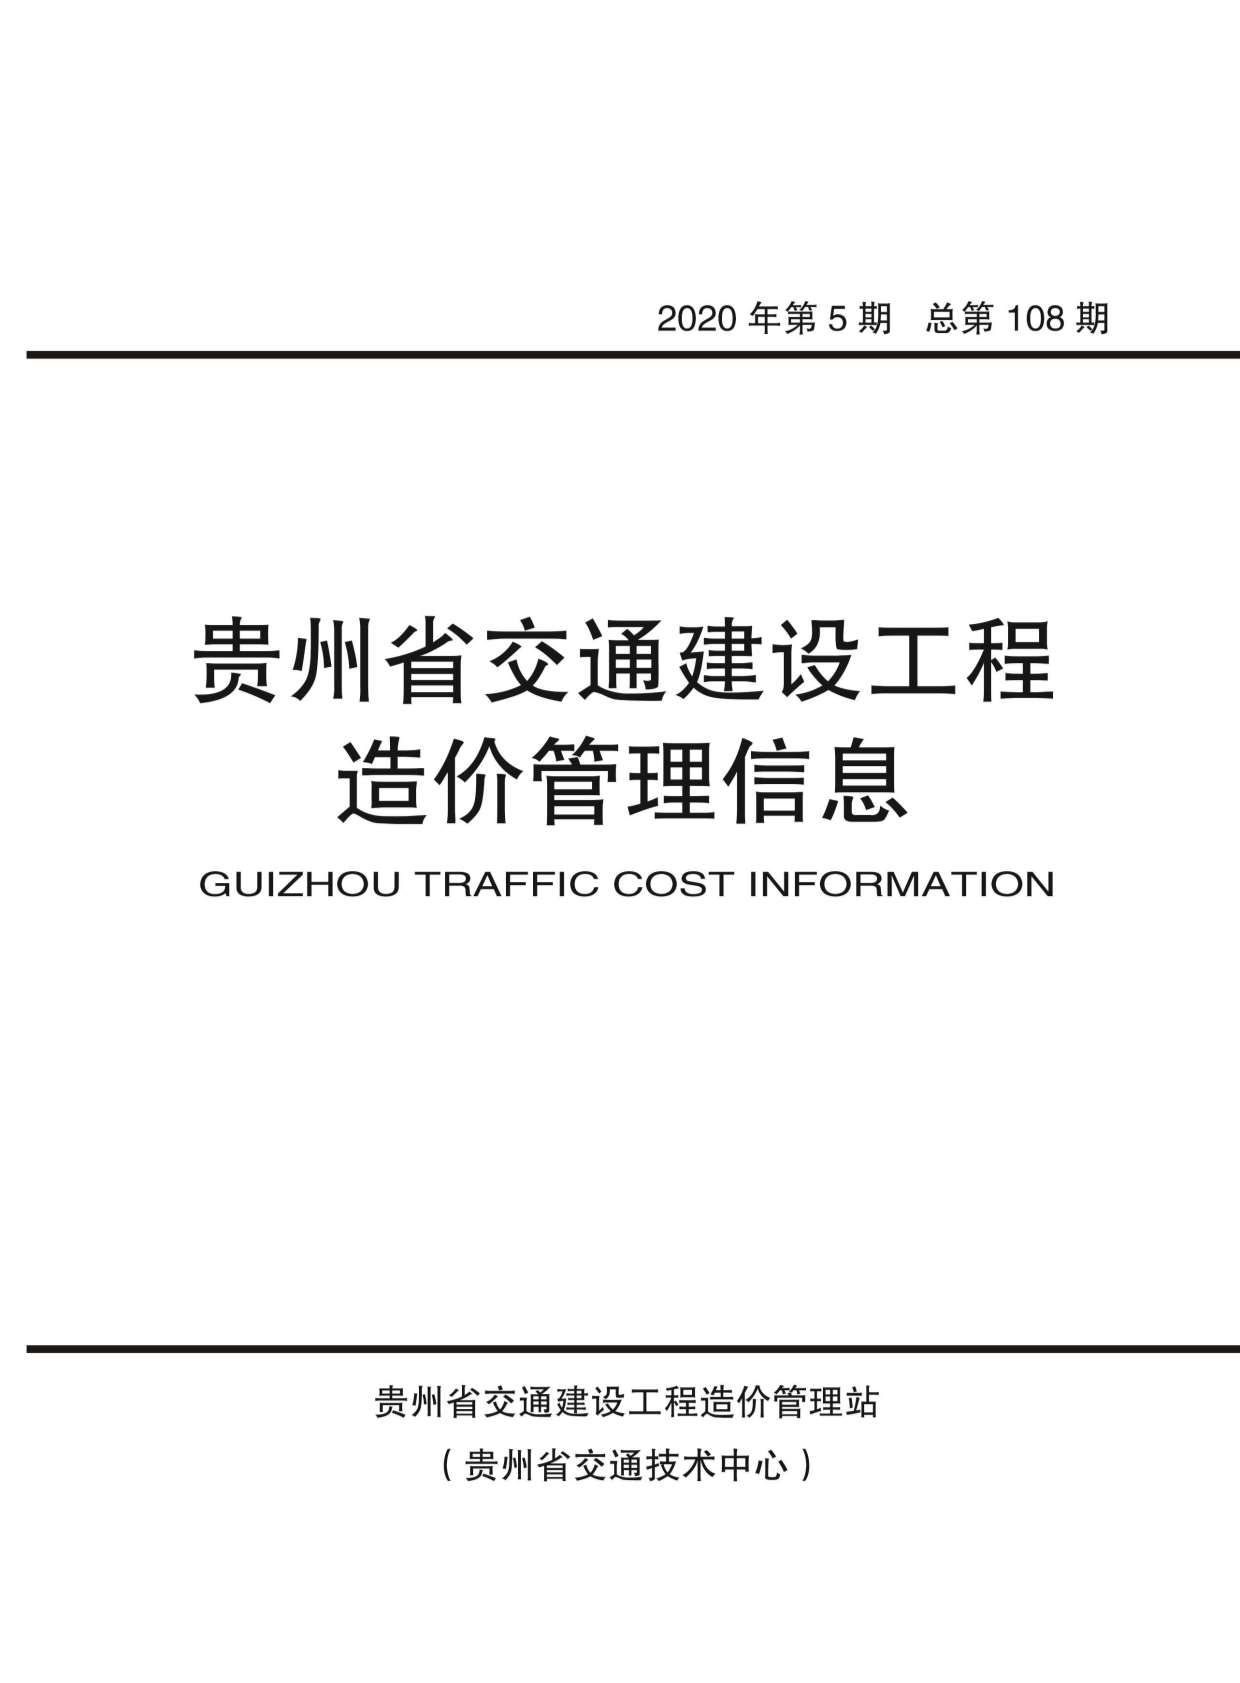 贵州省2020年5月交通公路信息价